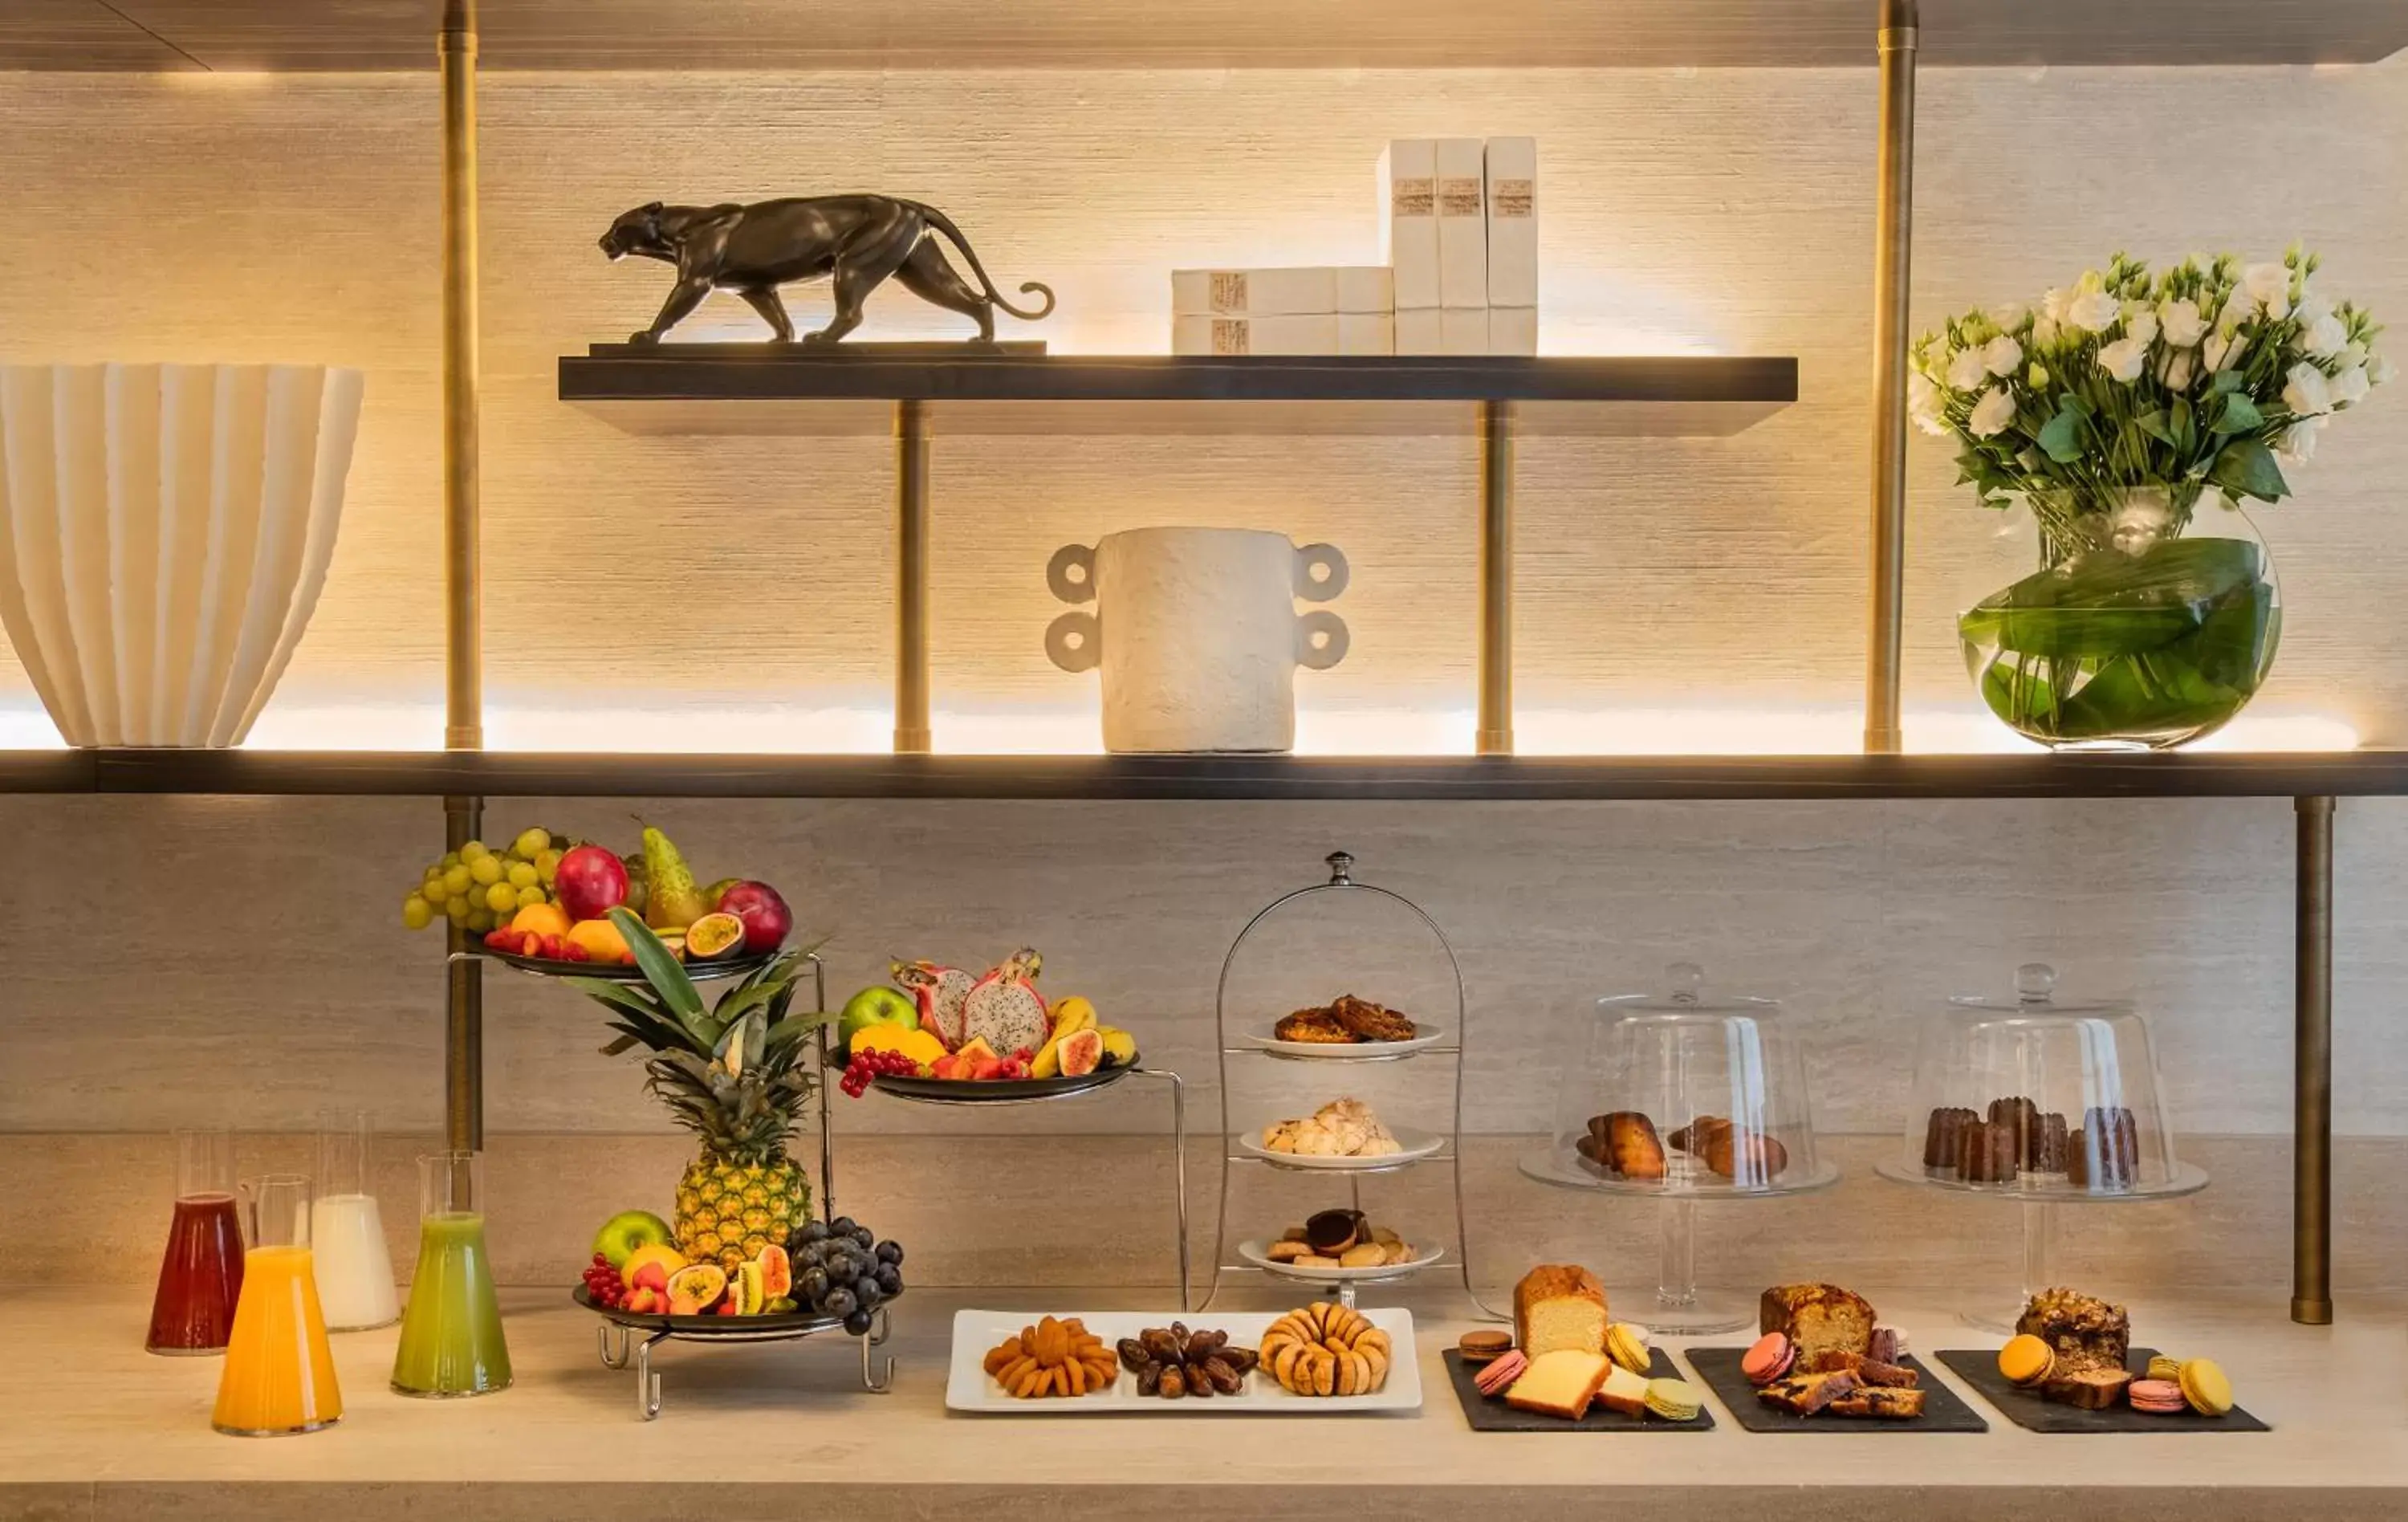 Buffet breakfast in Hôtel Elysia by Inwood Hotels